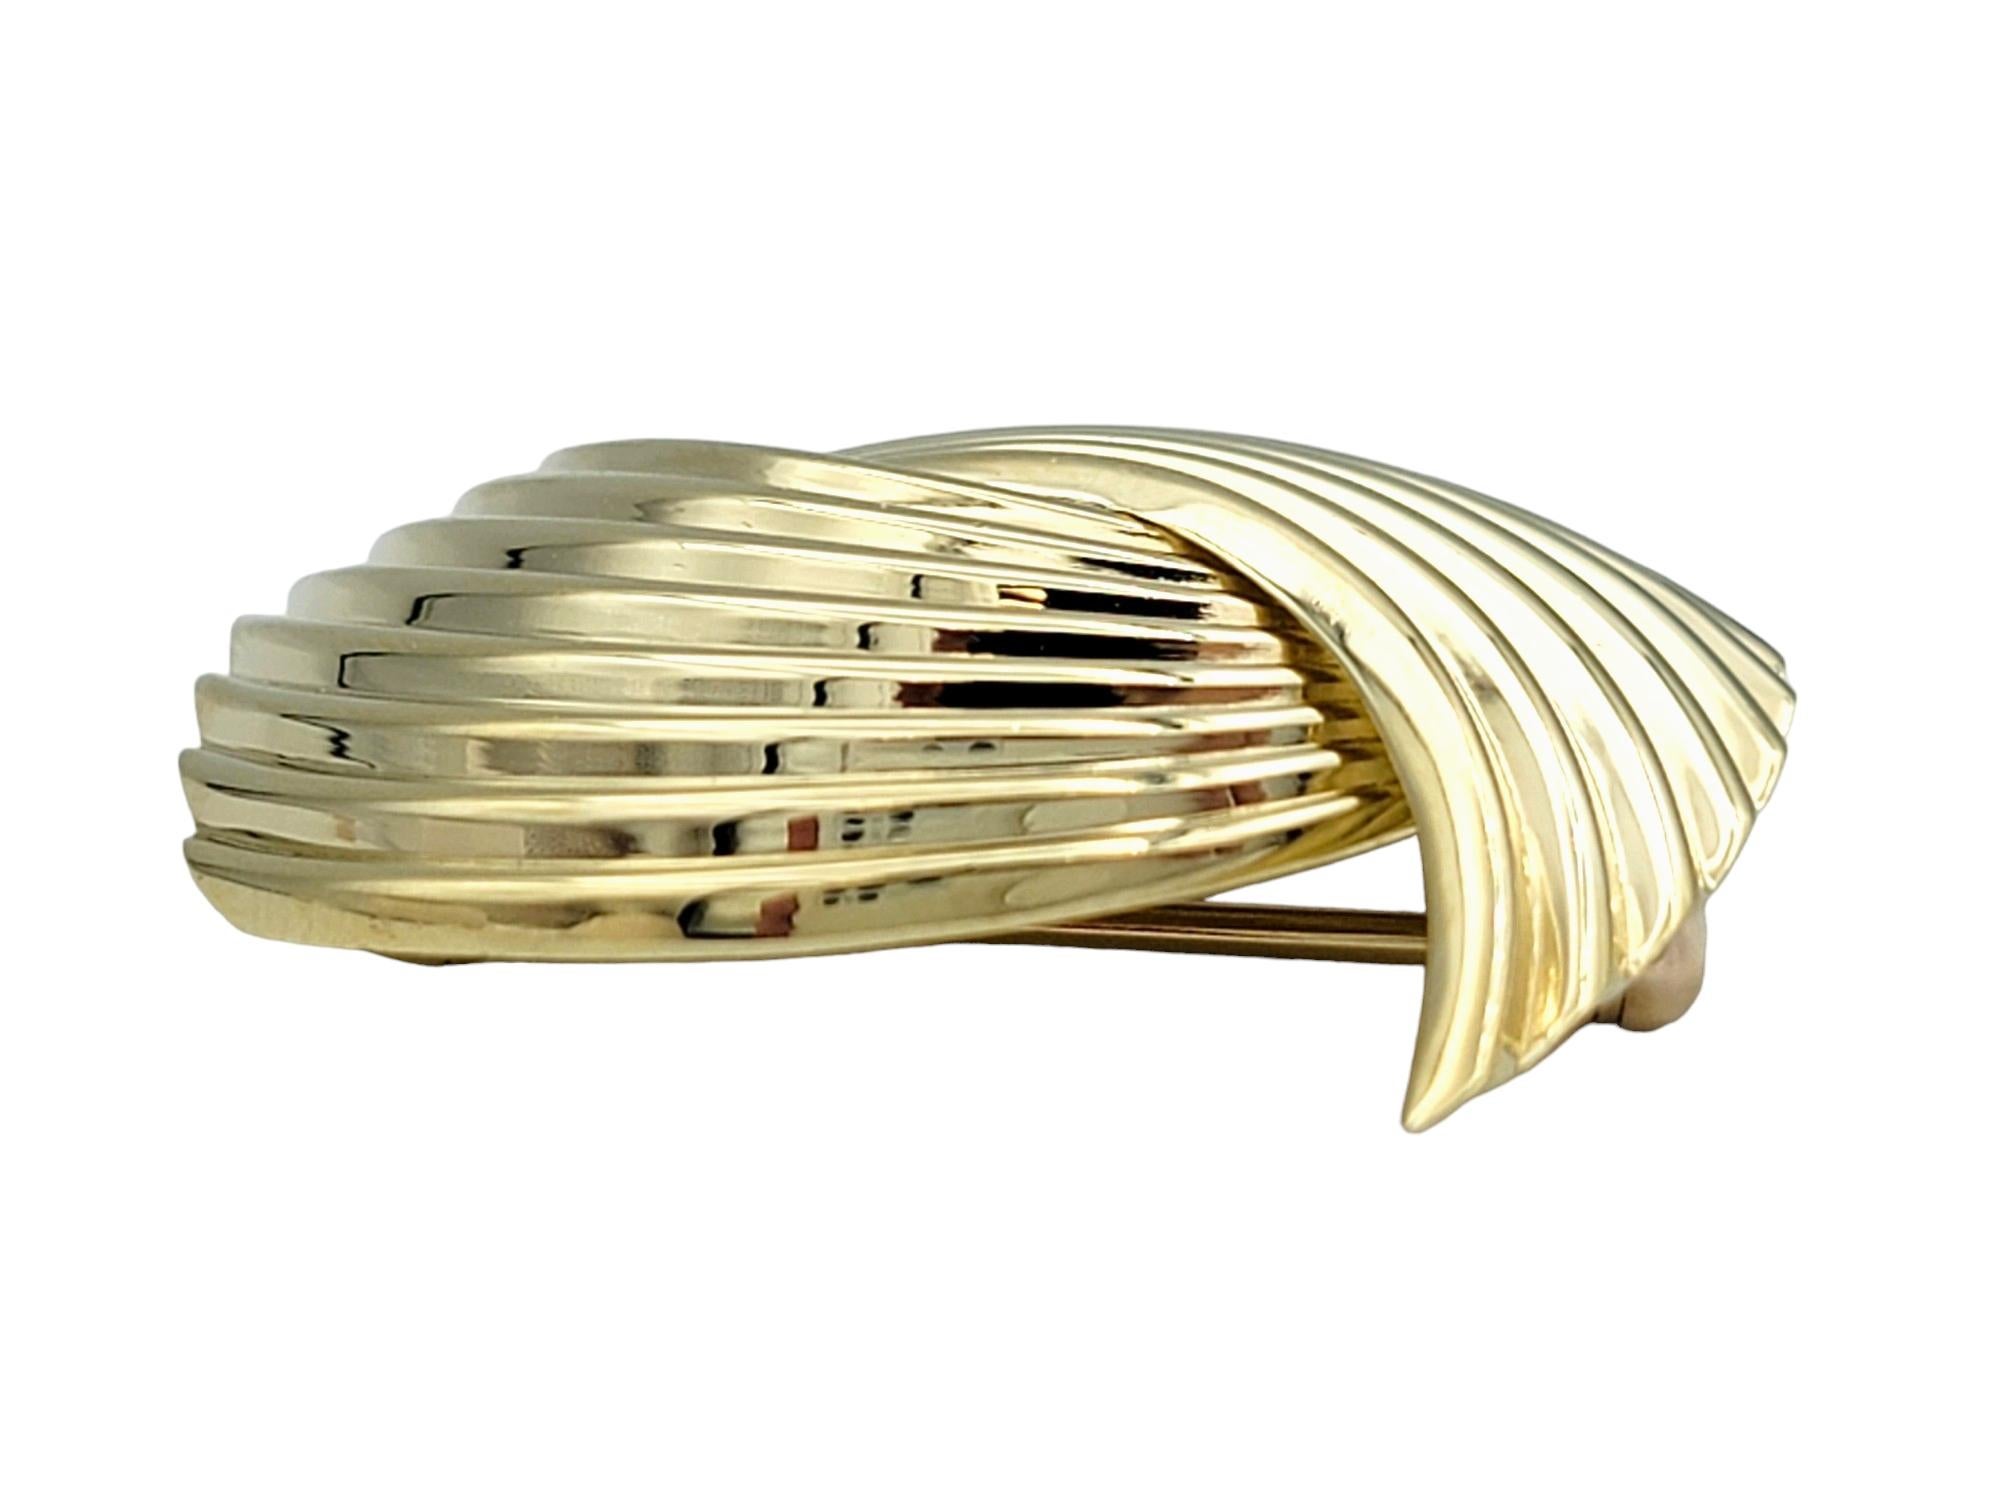 Cette broche vintage de Cartier présente un design unique en forme de pont, réalisé en or jaune 14 carats. La texture striée ajoute de la profondeur et de la dimension à la pièce, lui conférant un attrait sophistiqué et intemporel.

Cette broche